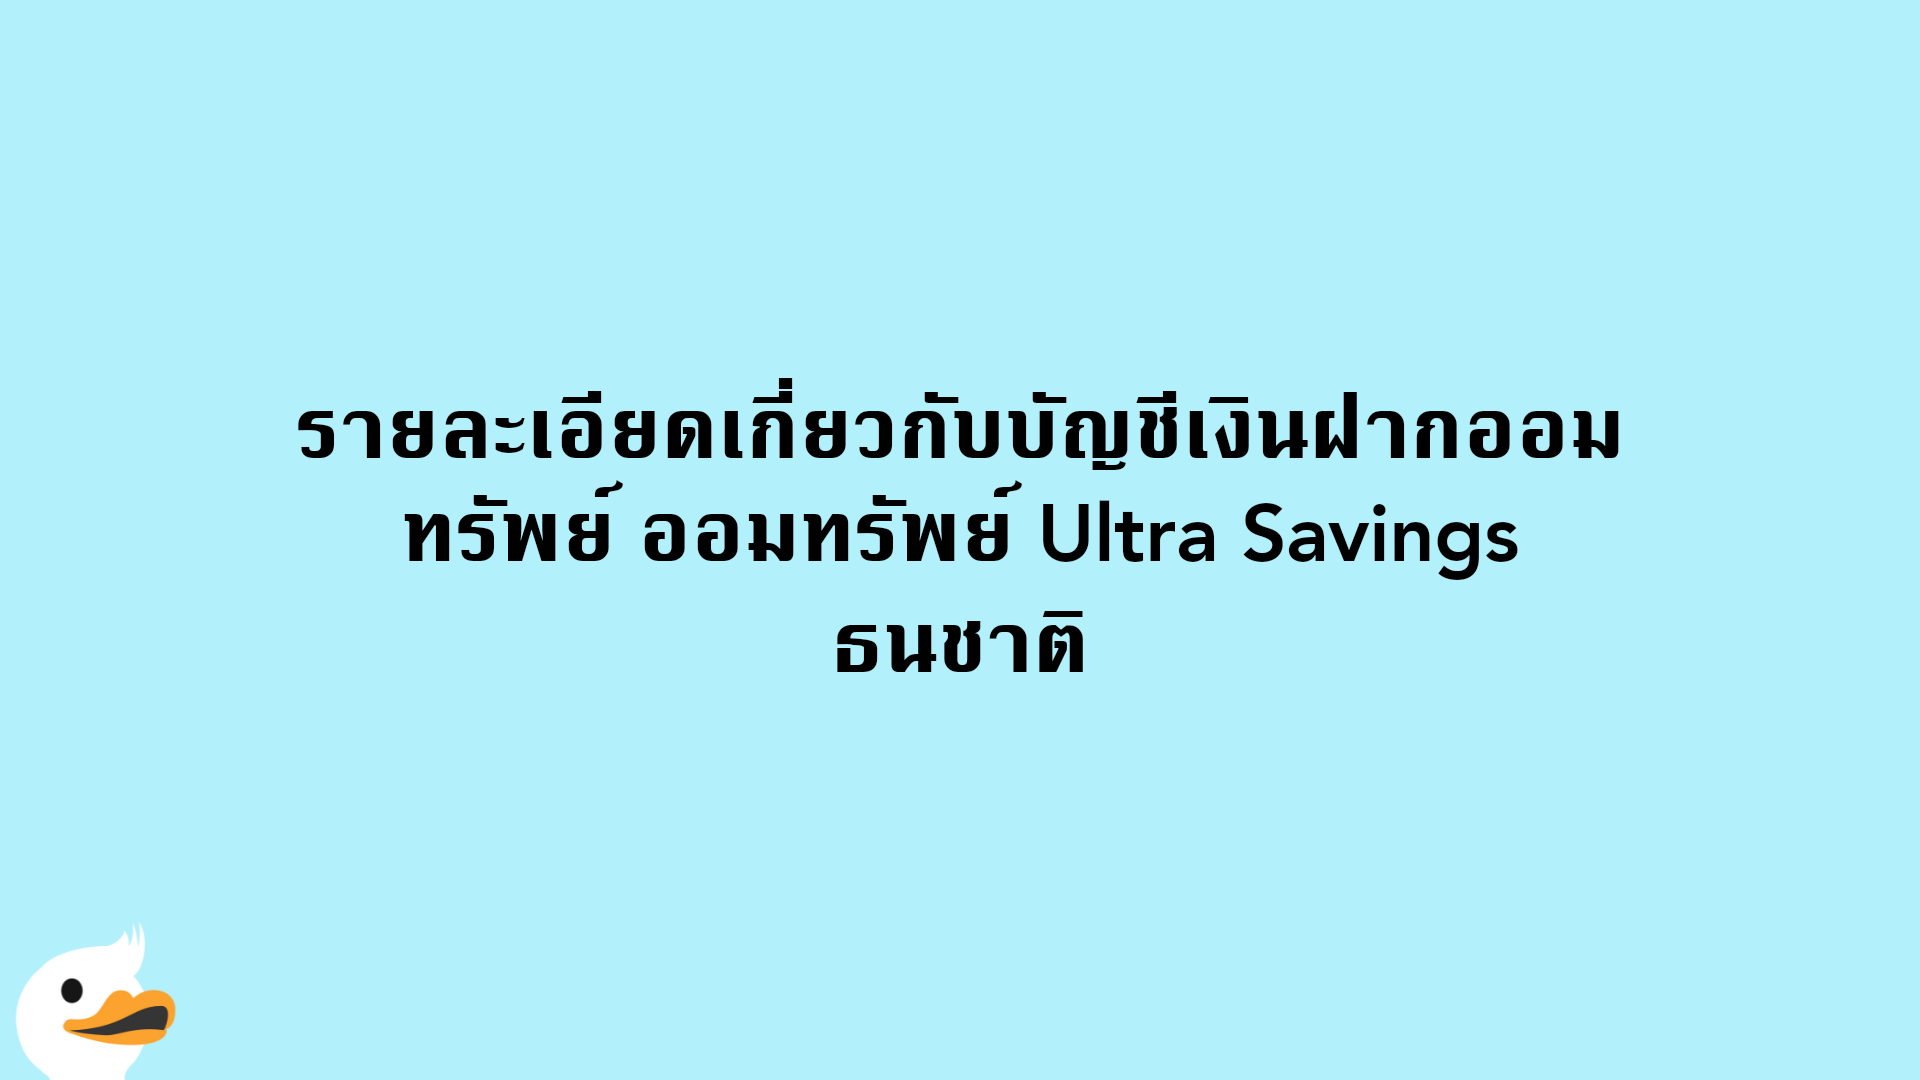 รายละเอียดเกี่ยวกับบัญชีเงินฝากออมทรัพย์ ออมทรัพย์ Ultra Savings ธนชาติ